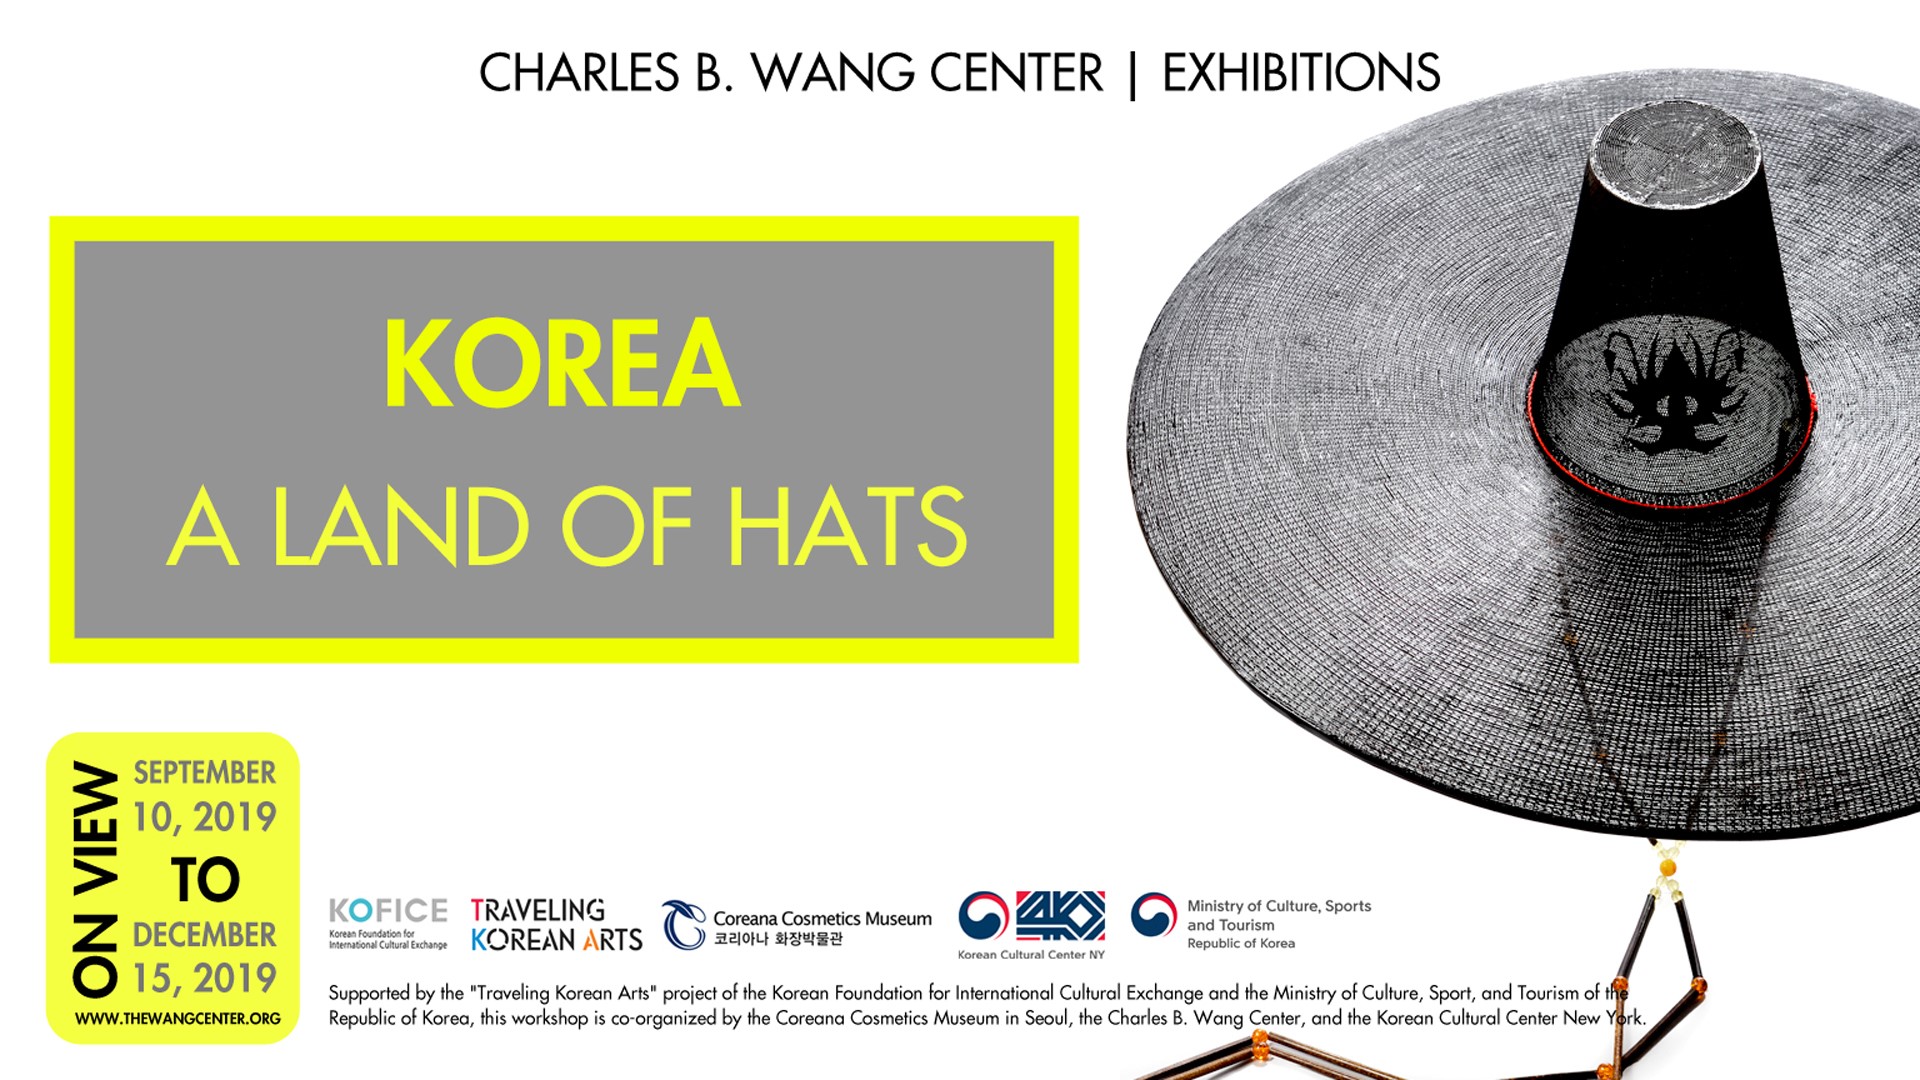 Korea A Land of Hats